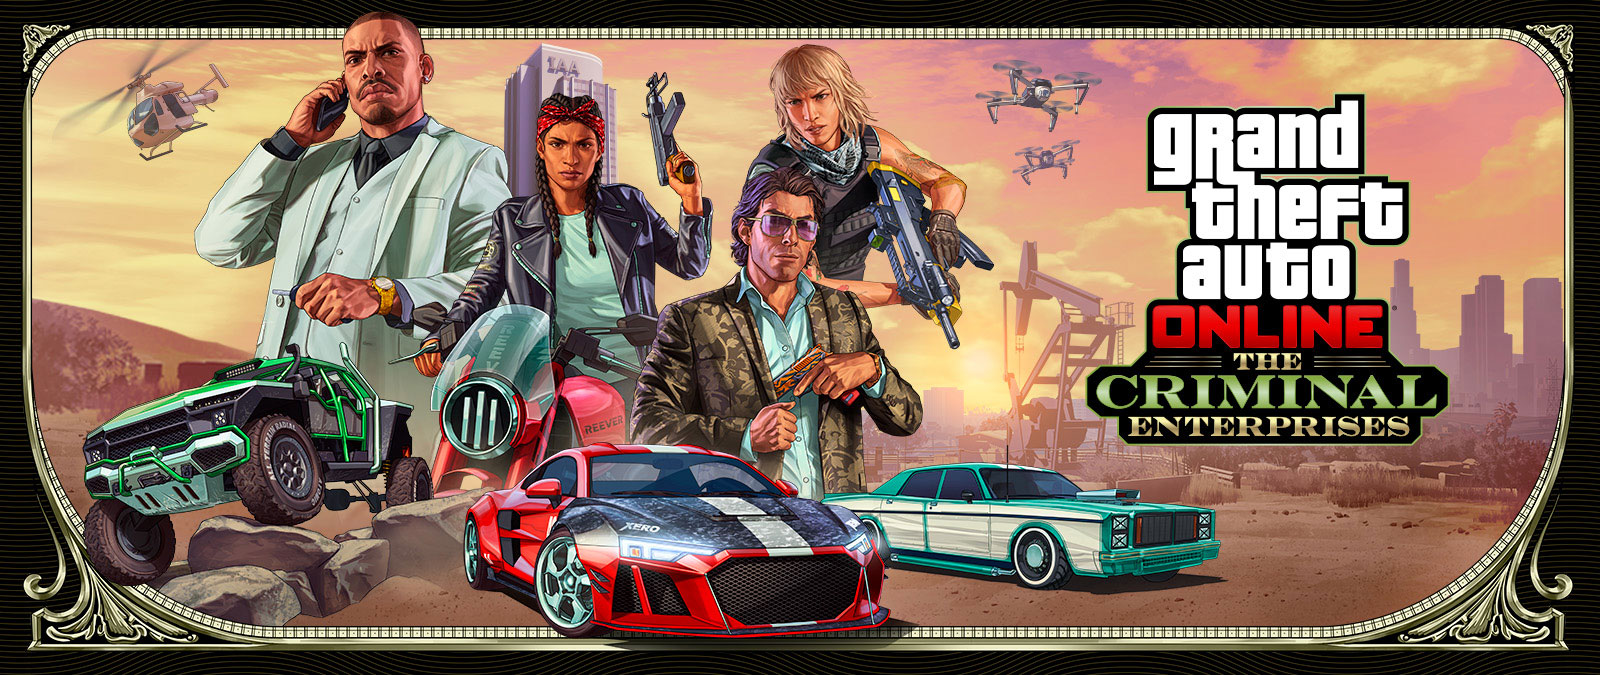 Grand Theft Auto Online: The Criminal Enterprises, trois véhicules élégants font la course au premier plan alors que quatre personnages posent au-dessus de la tête.